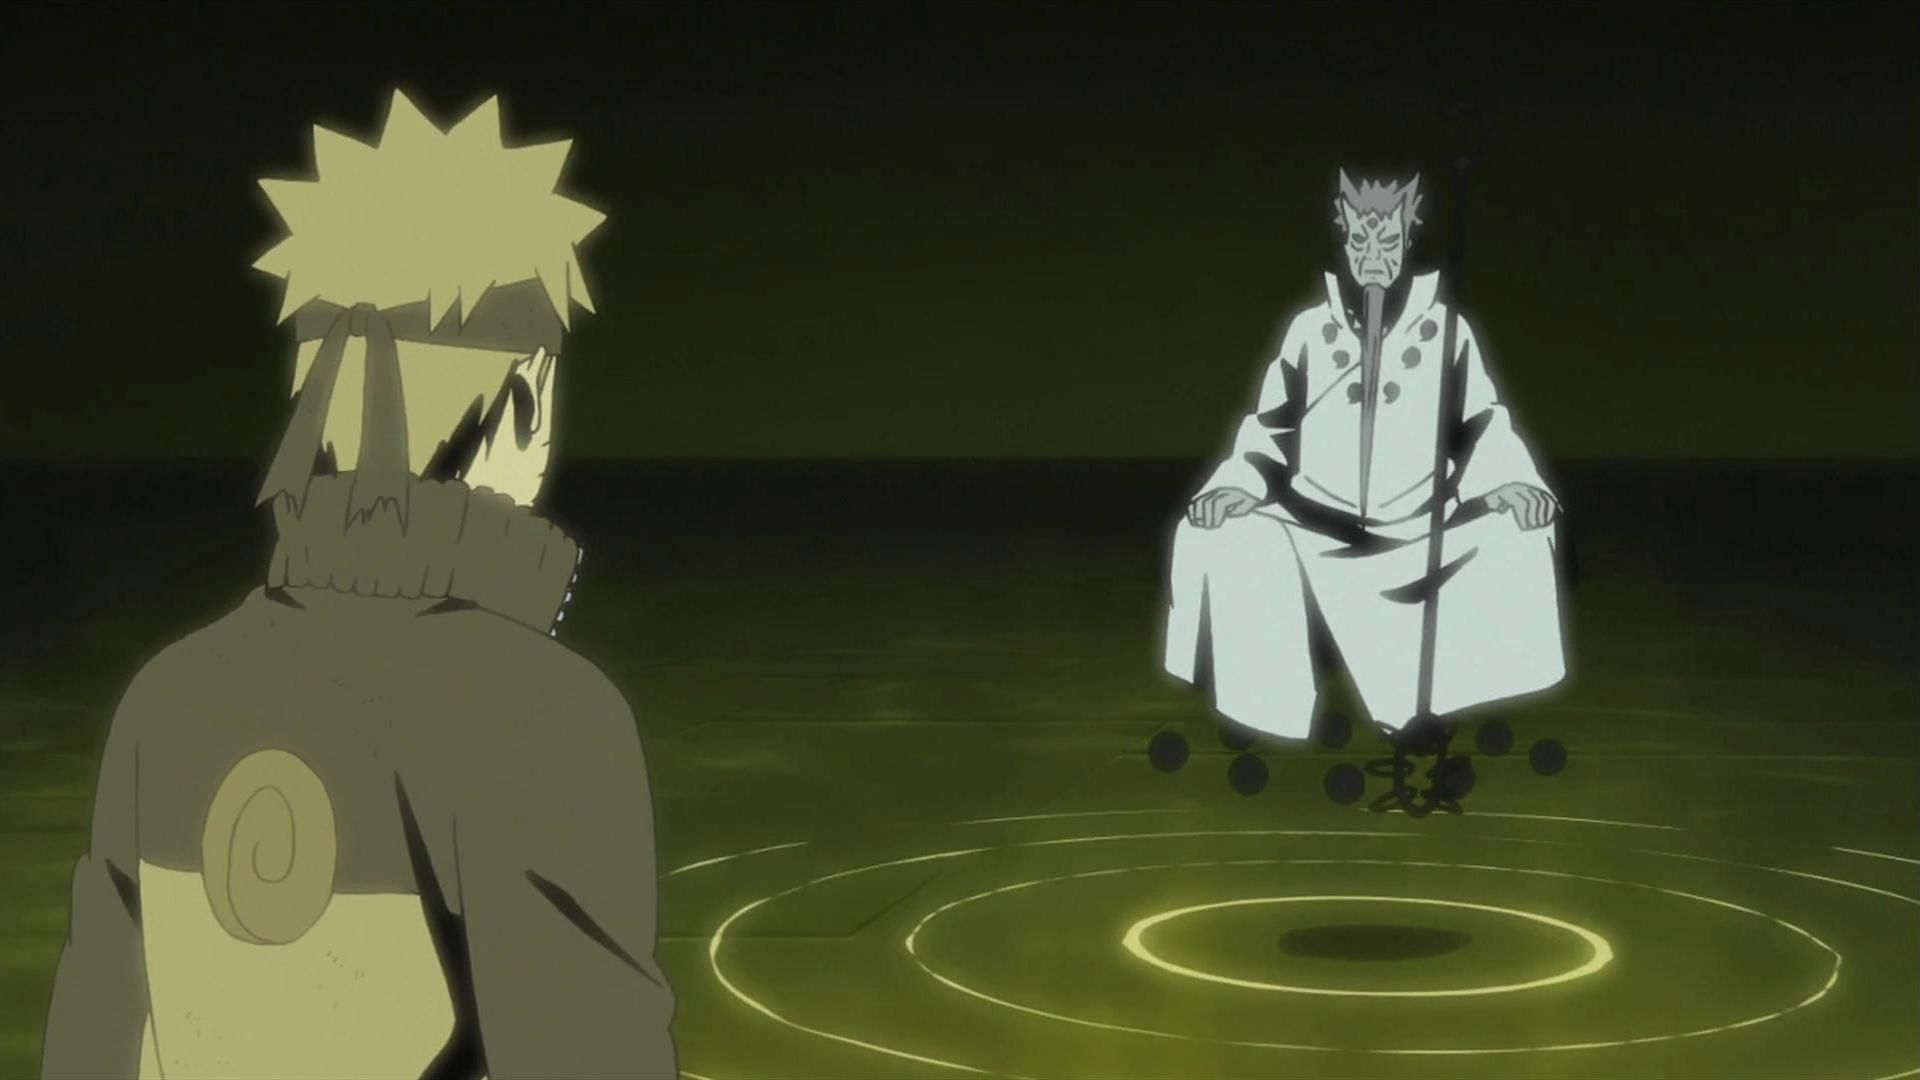 Hagoromo meets Naruto Uzumaki (Image via Studio Pierrot)